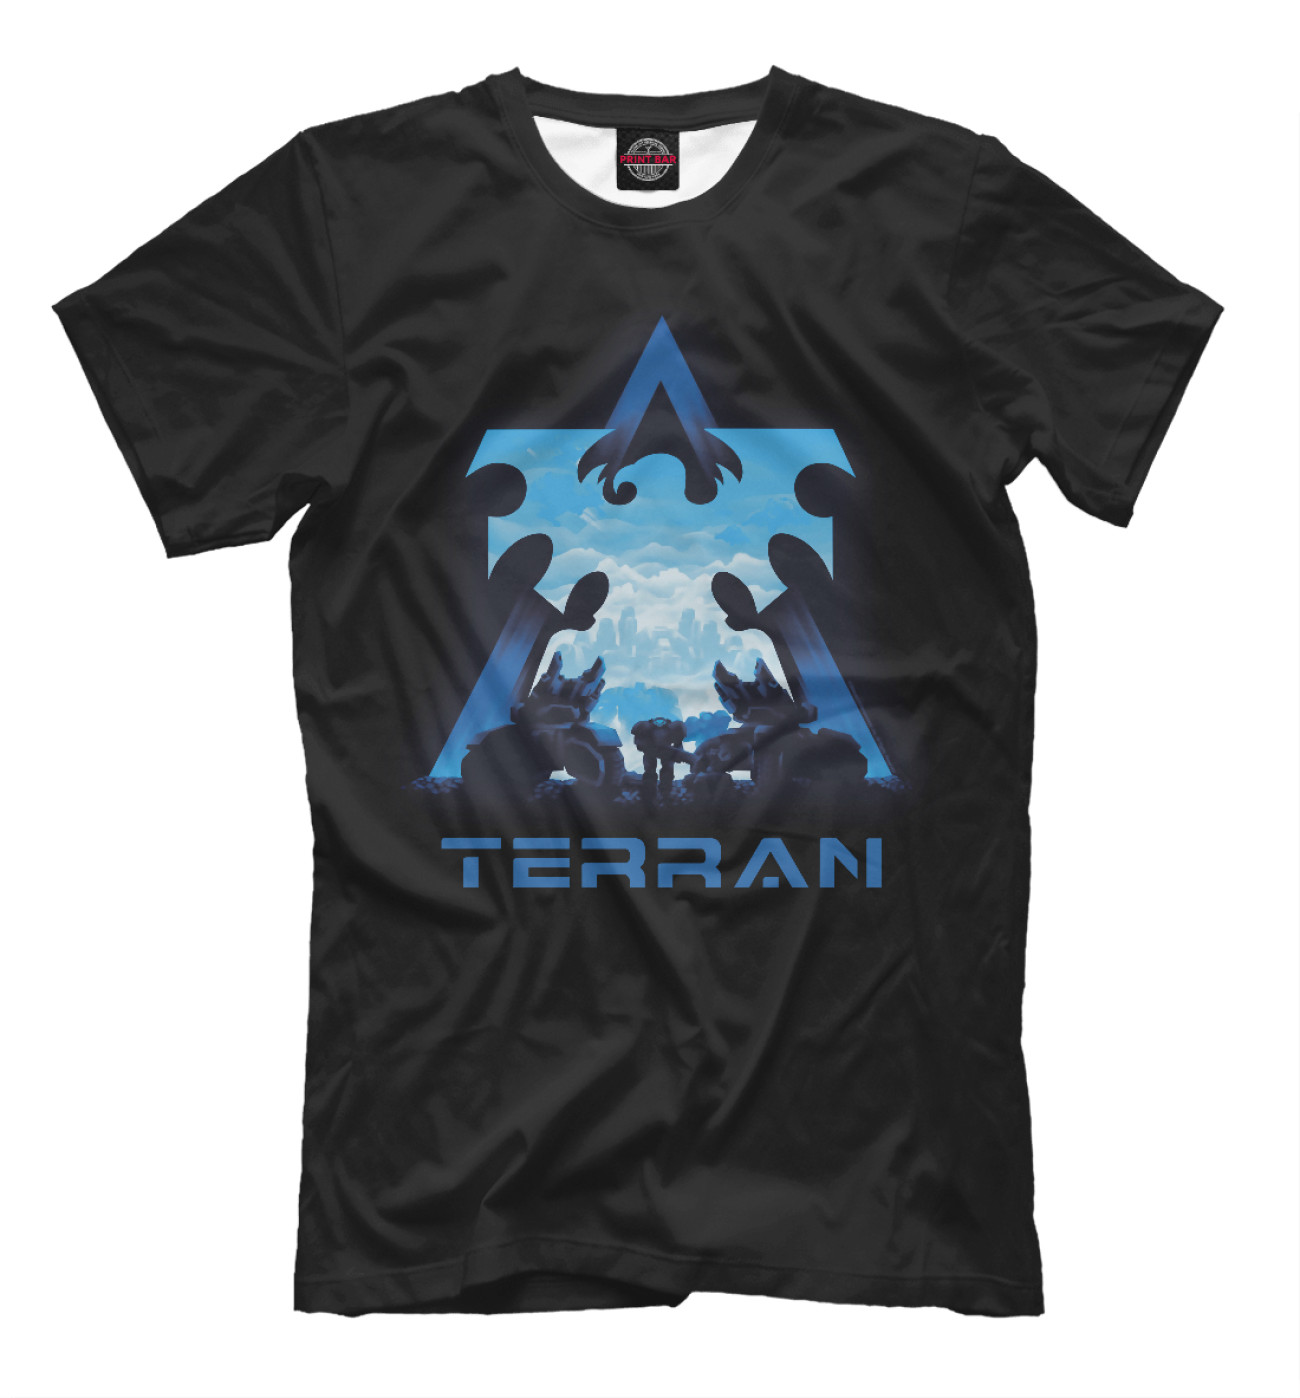 Мужская Футболка StarCraft II Terran, артикул: GMR-624712-fut-2